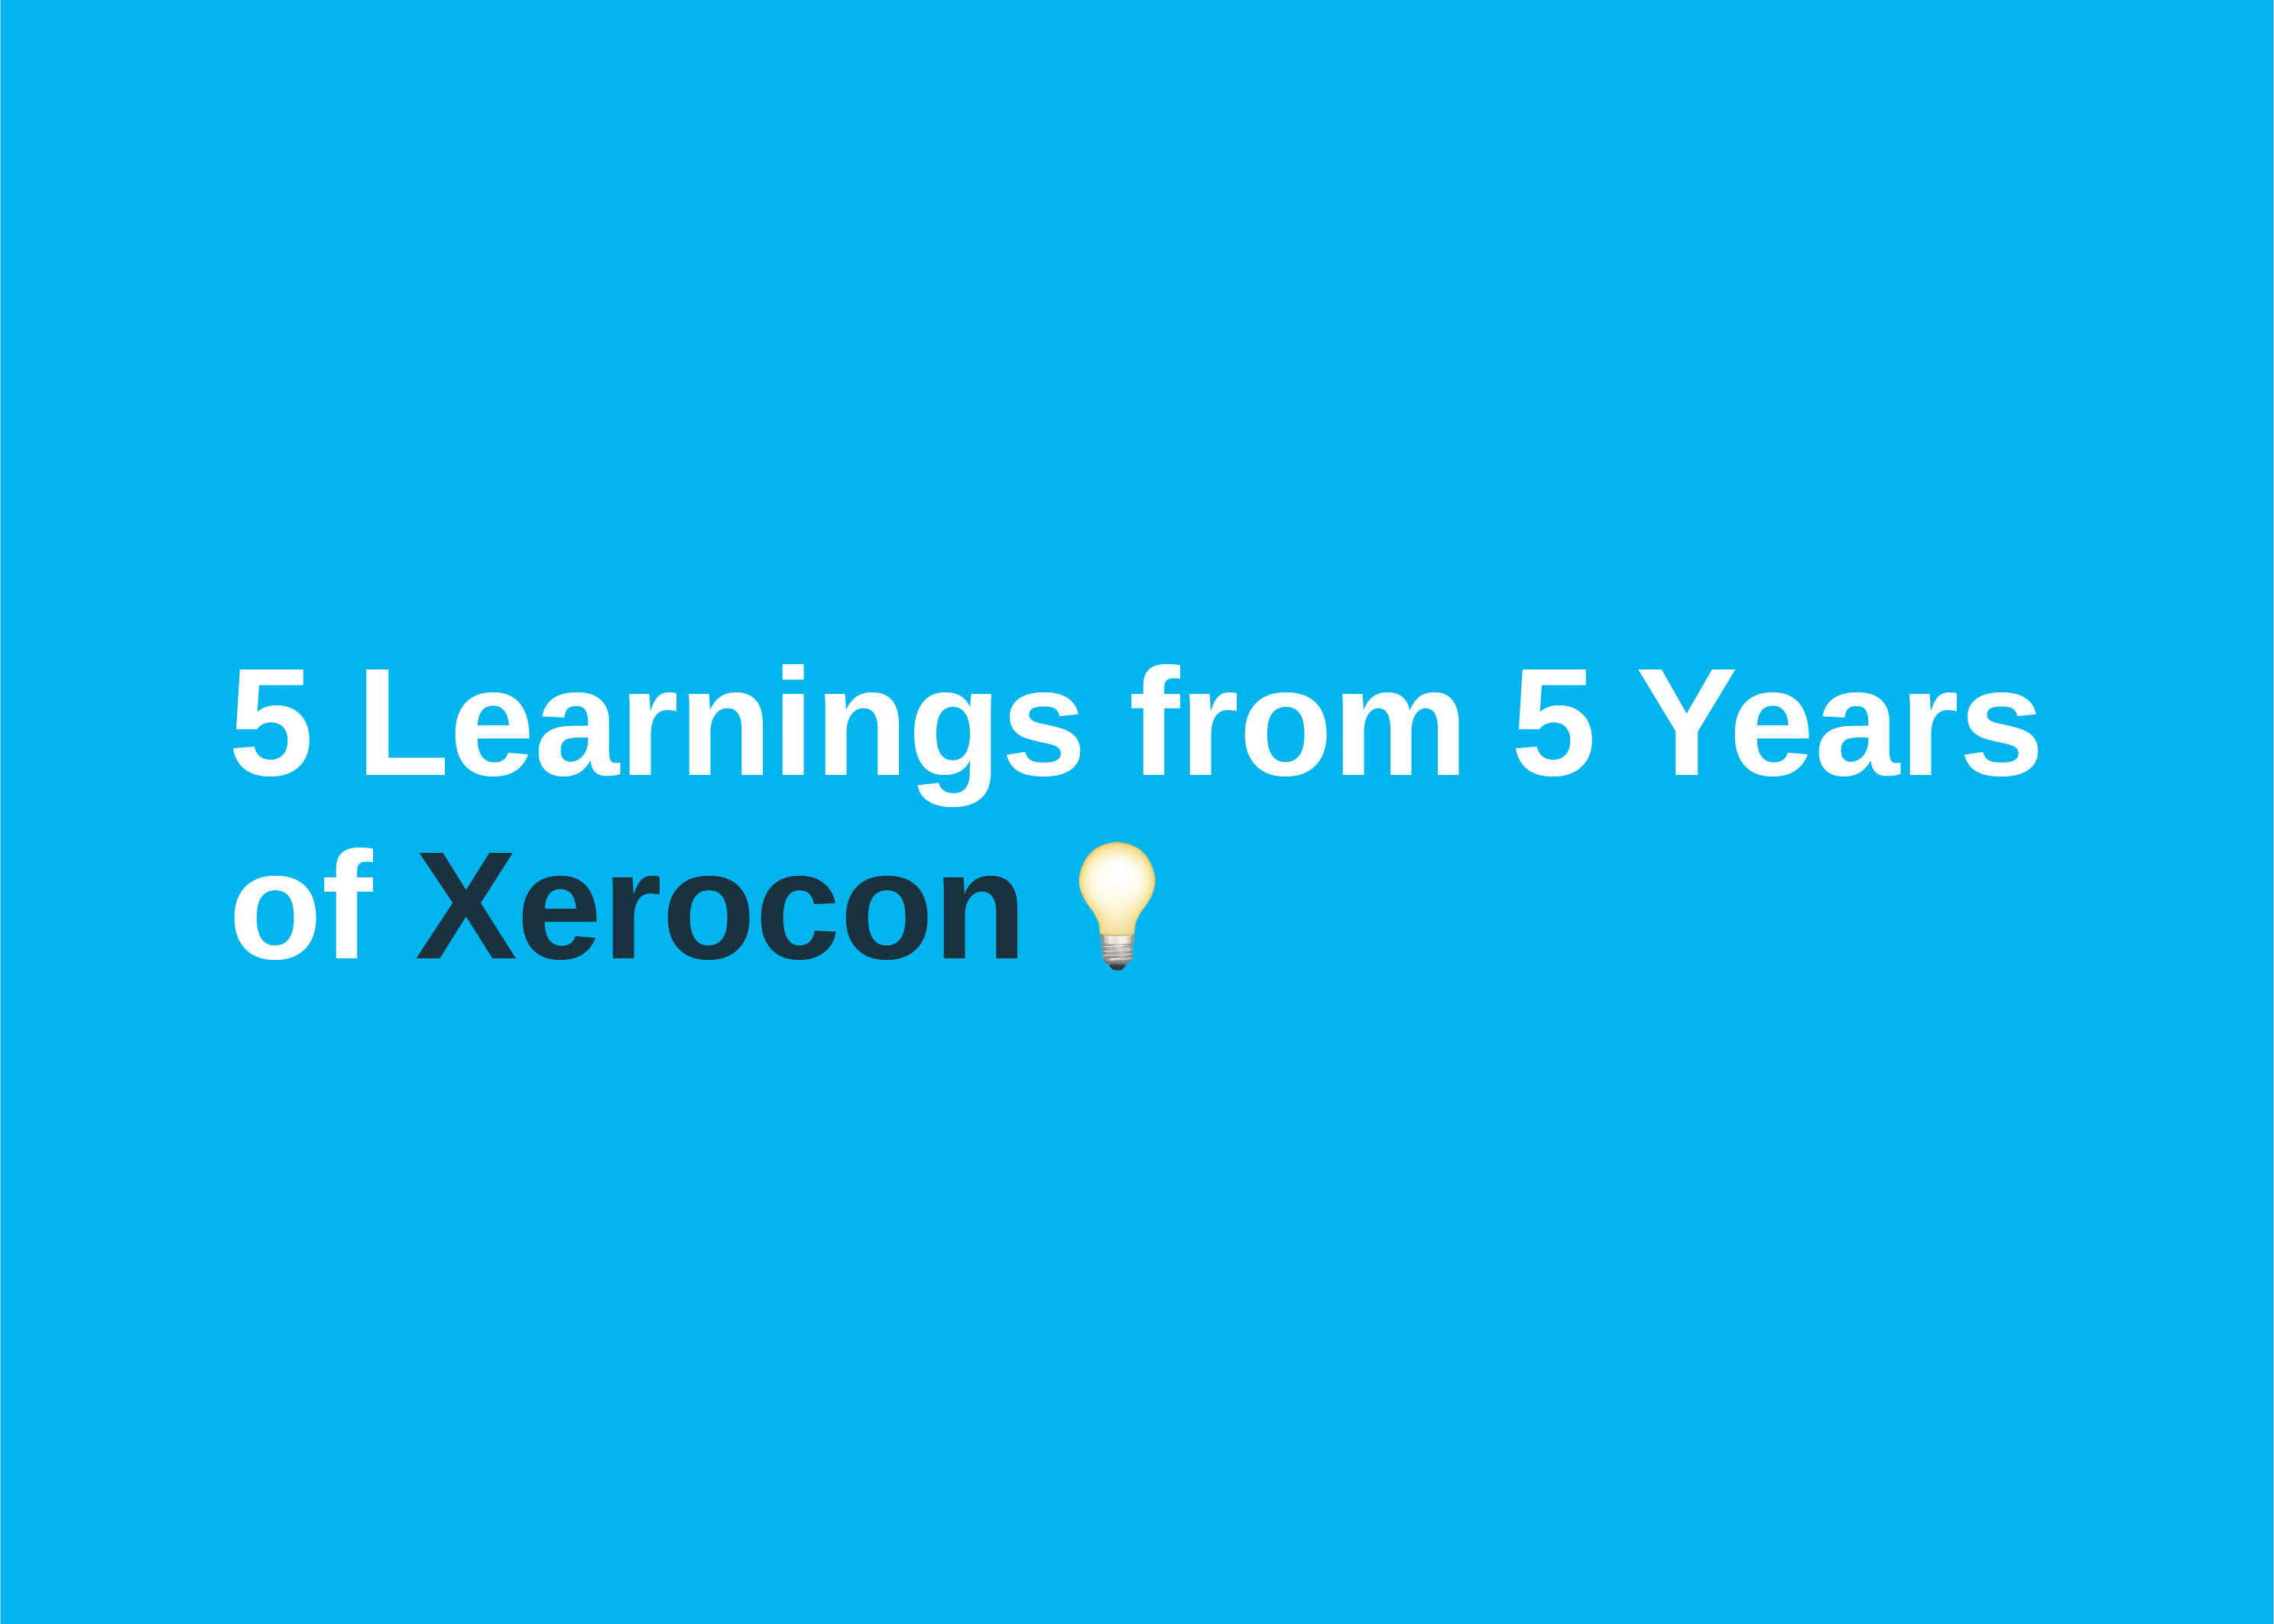 5 Learnings from 5 years of Xerocon